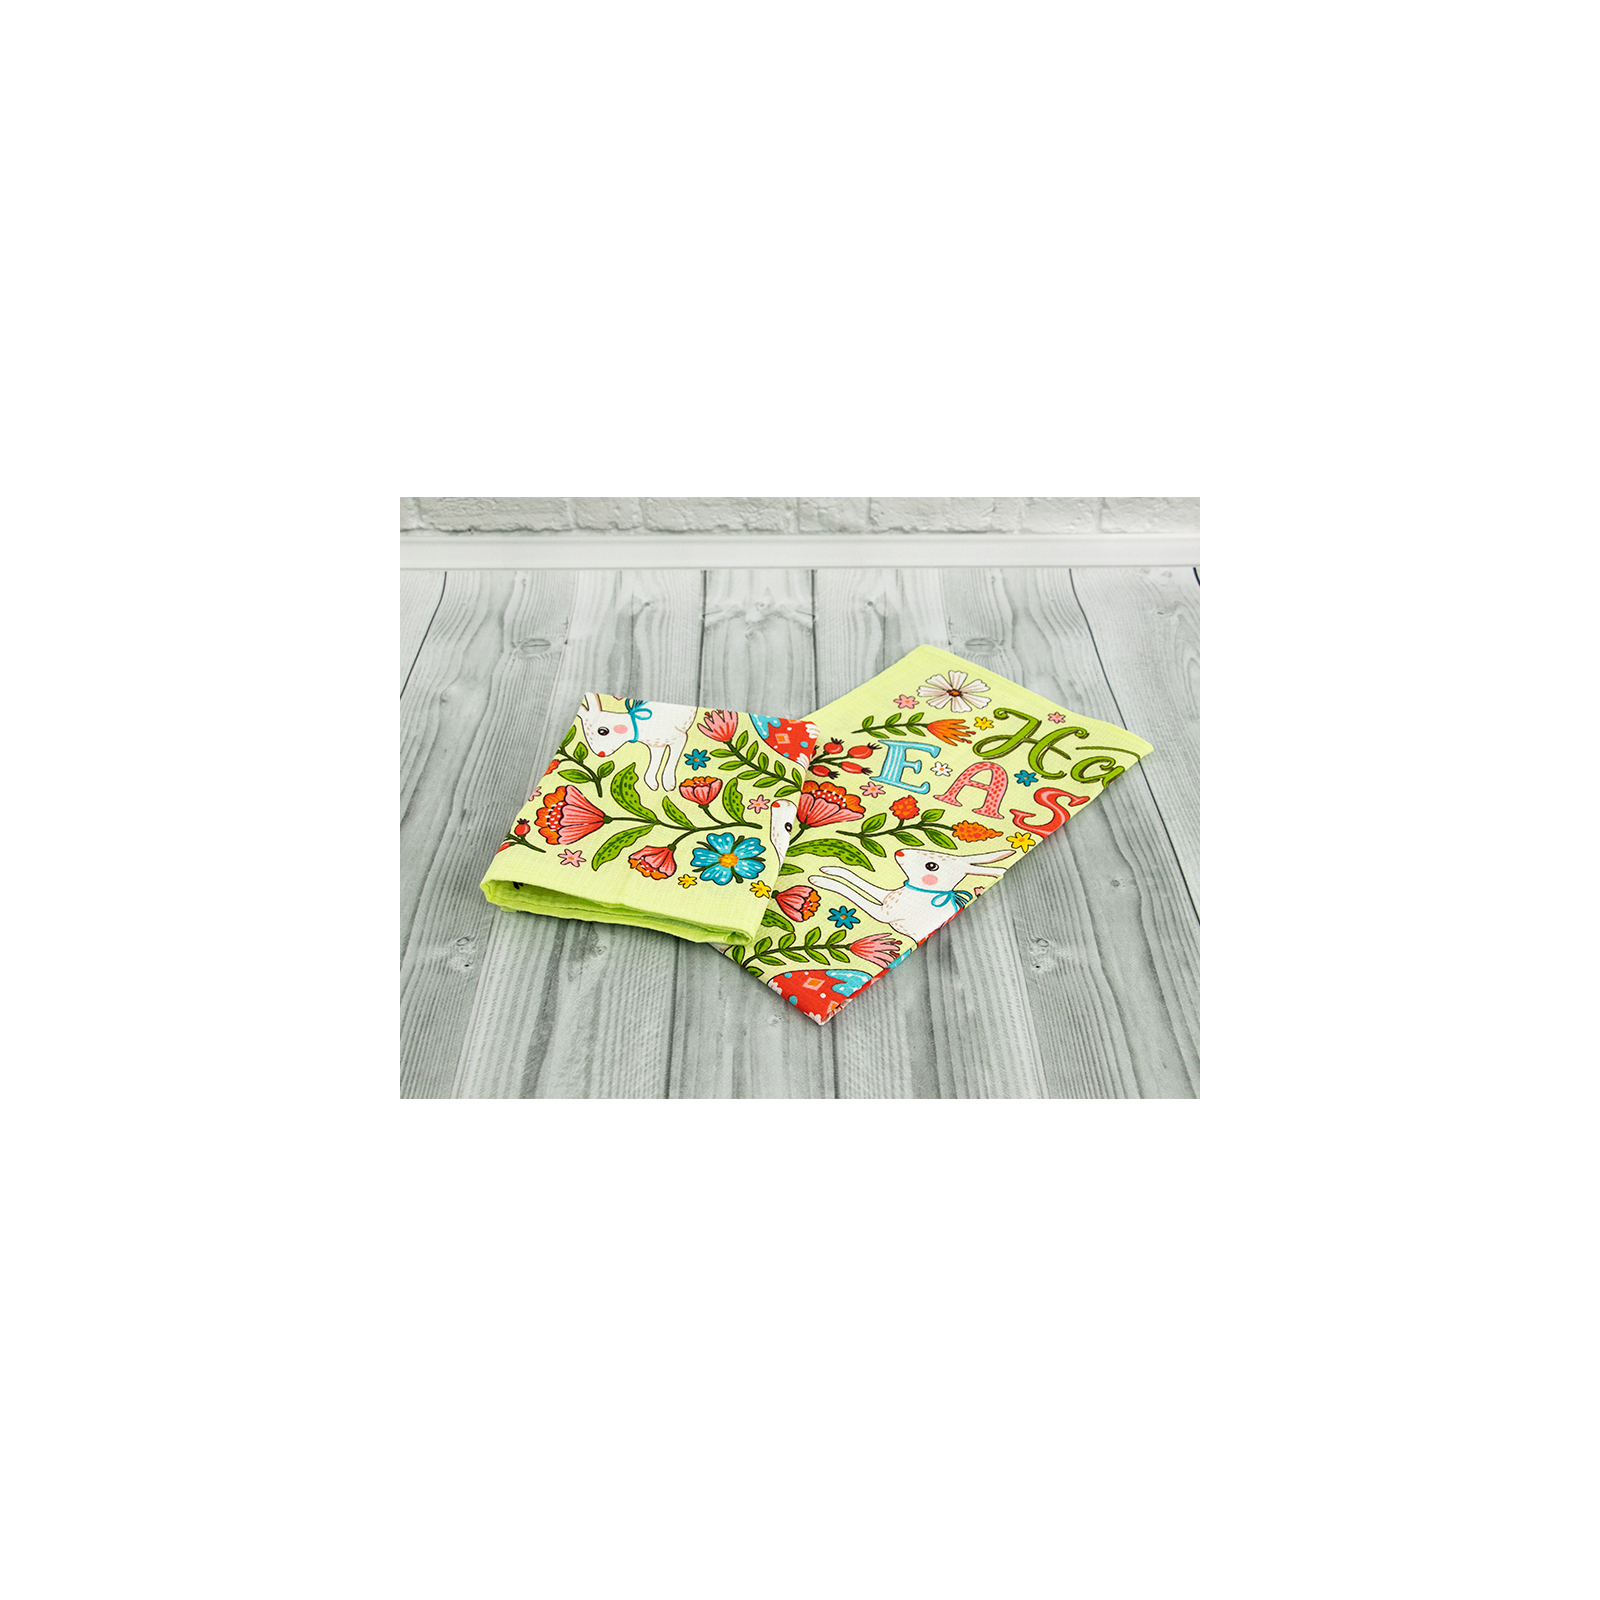 Полотенце Руно вафельное набивное Пасха салатовый 45х60 см (205.15_Великдень салатовий_3) изображение 4